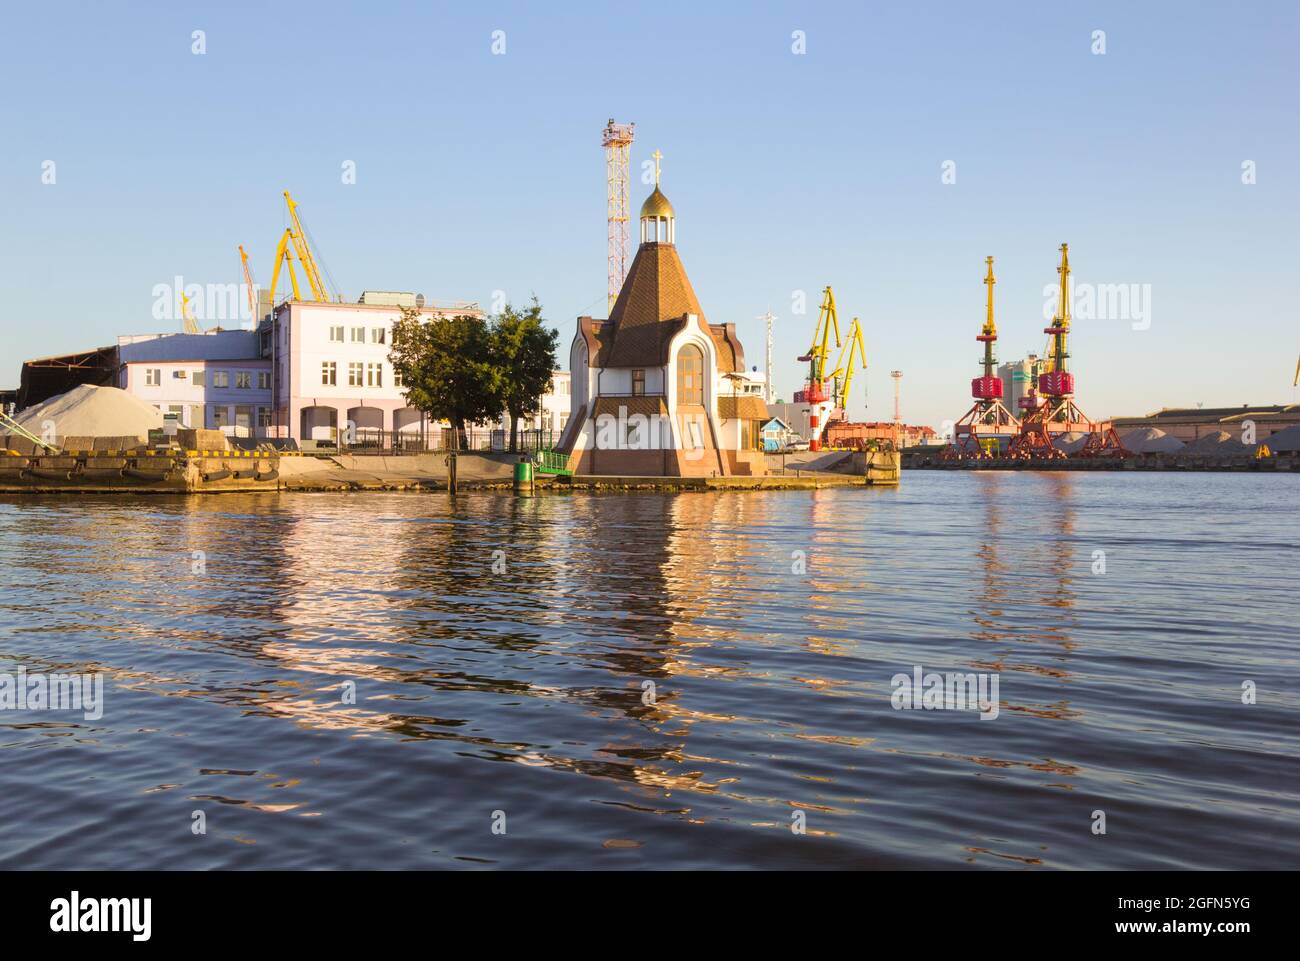 Königsberg, Russland - Jule 30, 2017: Die Nikolaikirche auf dem Gebiet des Seehafens am Fluss Pregolja. Stockfoto